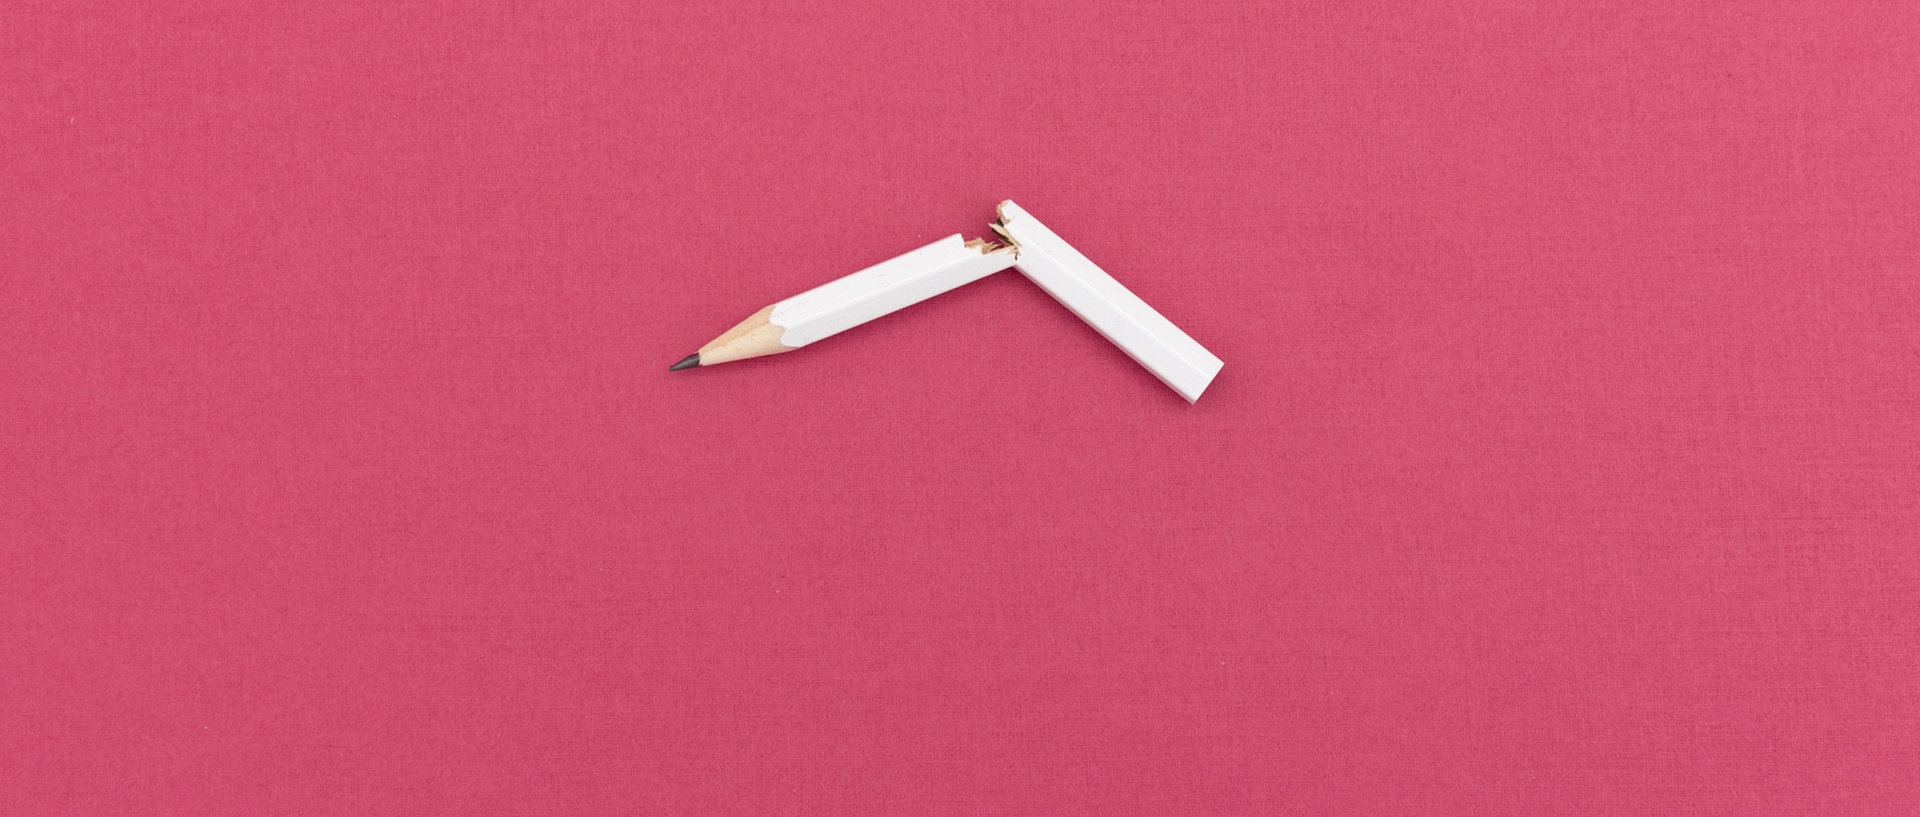 Ein zerbrochener Bleistift., © Marie Maerz / photocase.de